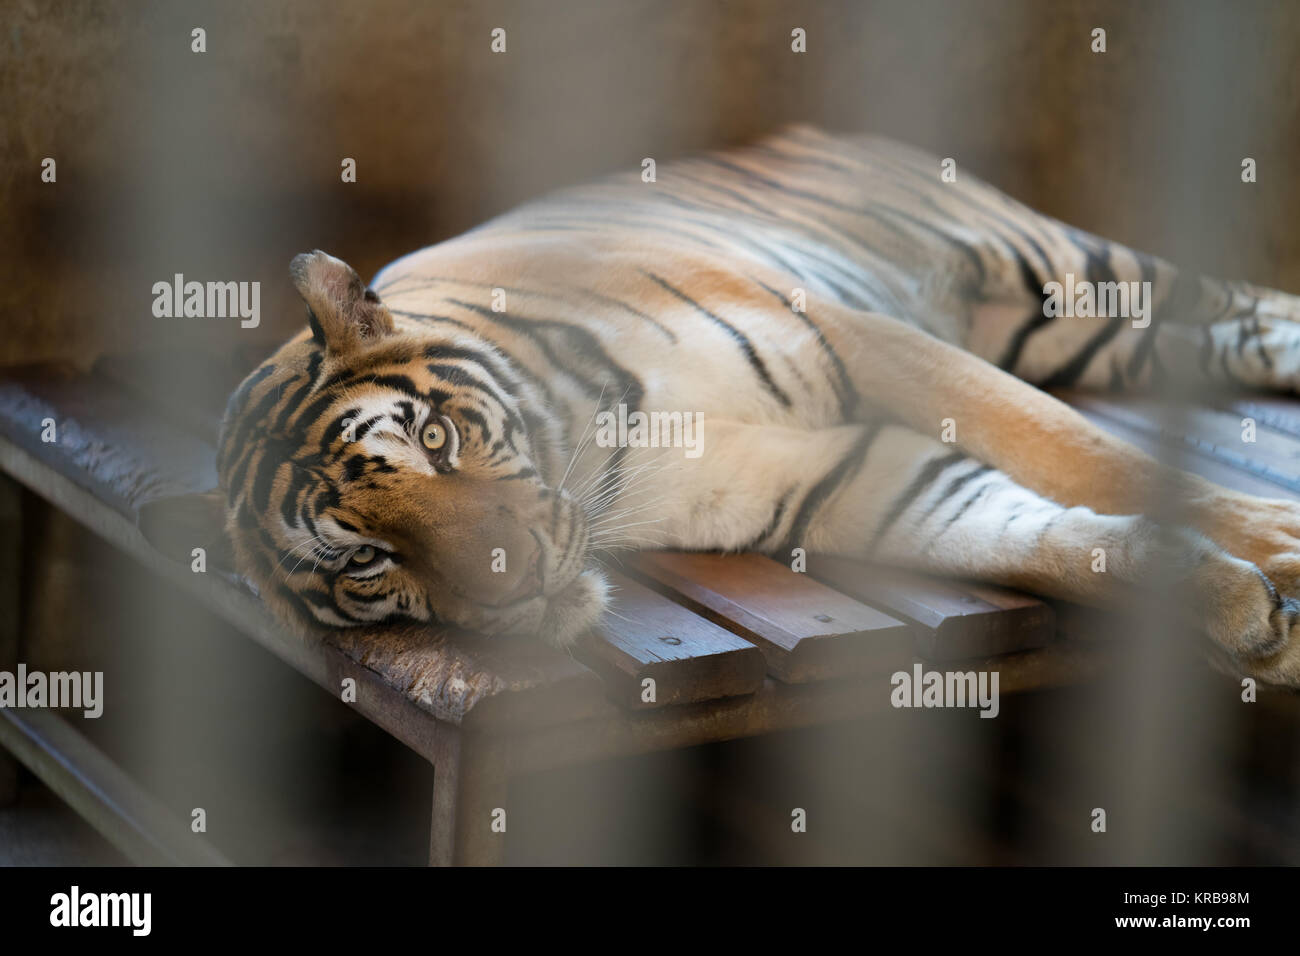 Tigre en una jaula del zoo Foto de stock